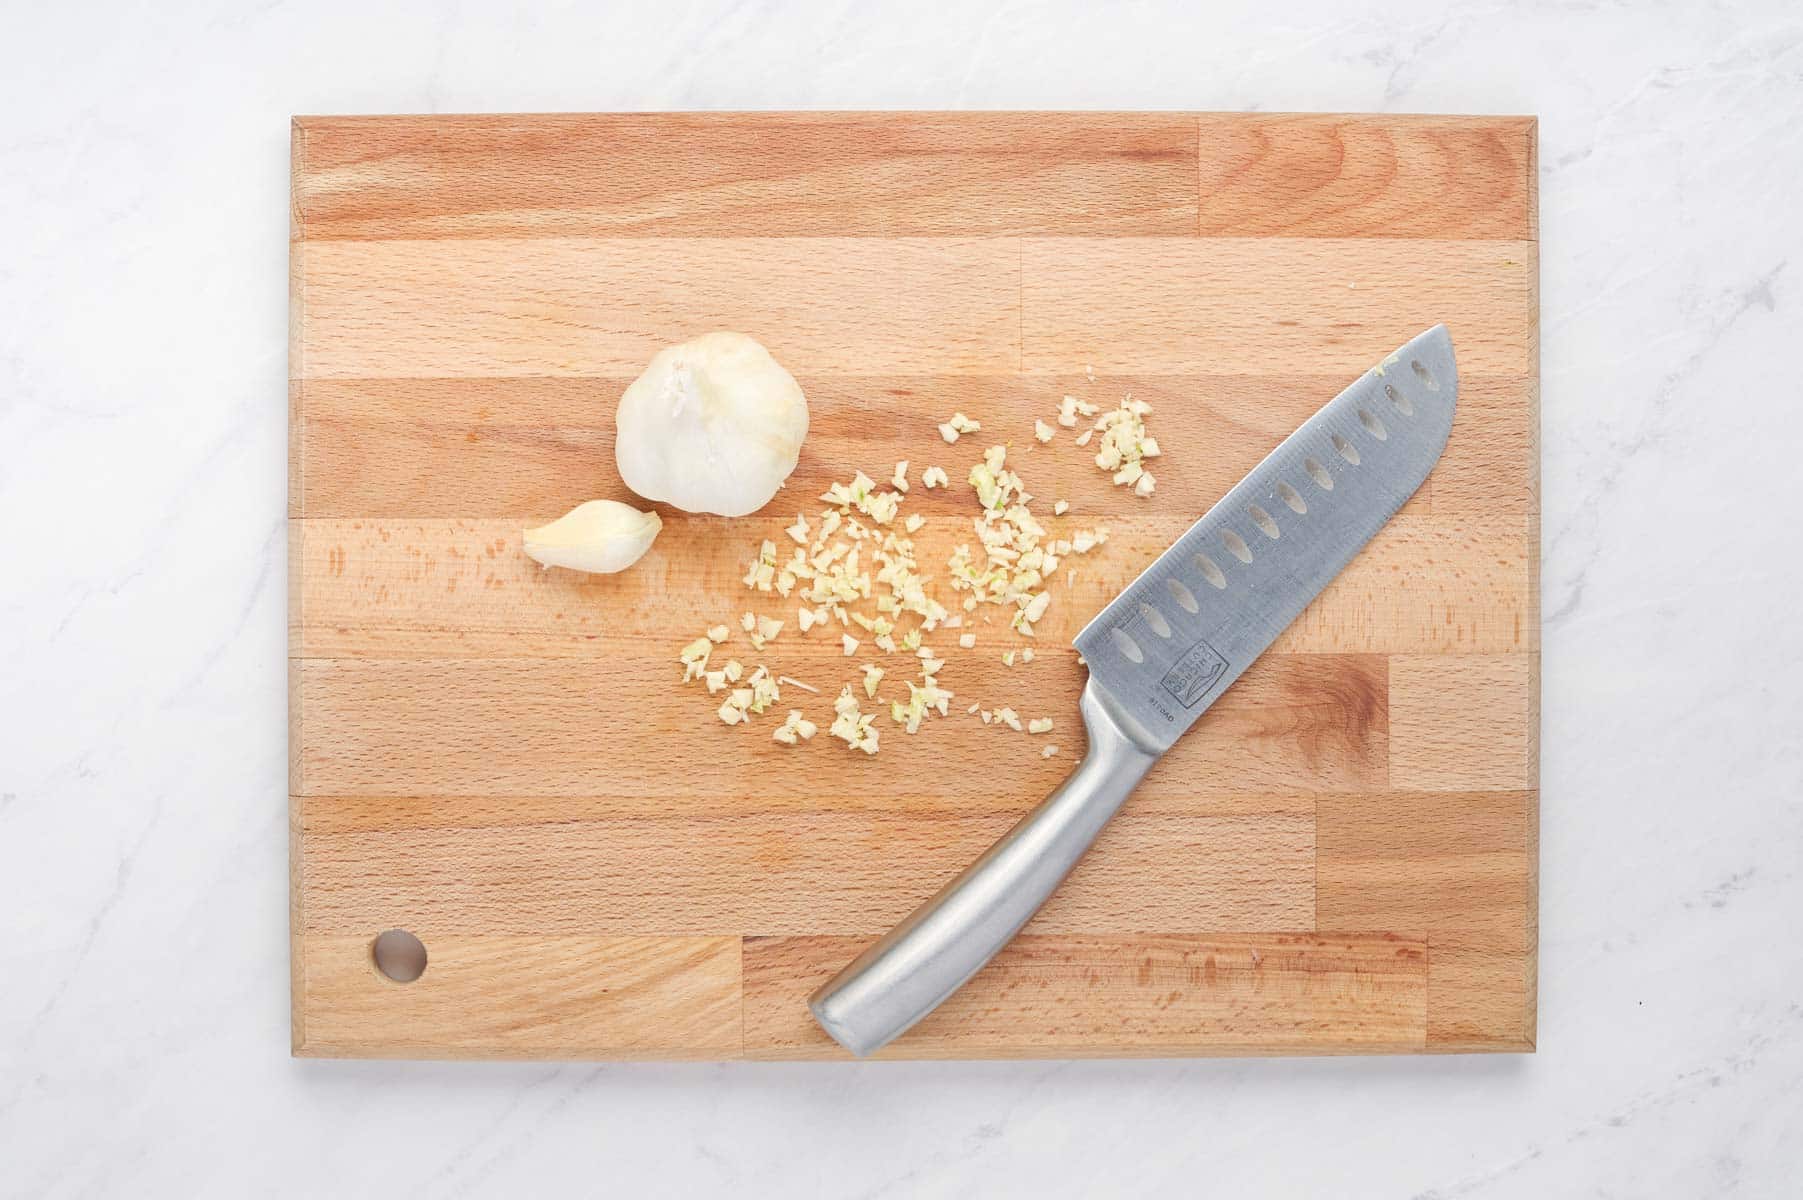 Garlic is chopped on a cutting board.